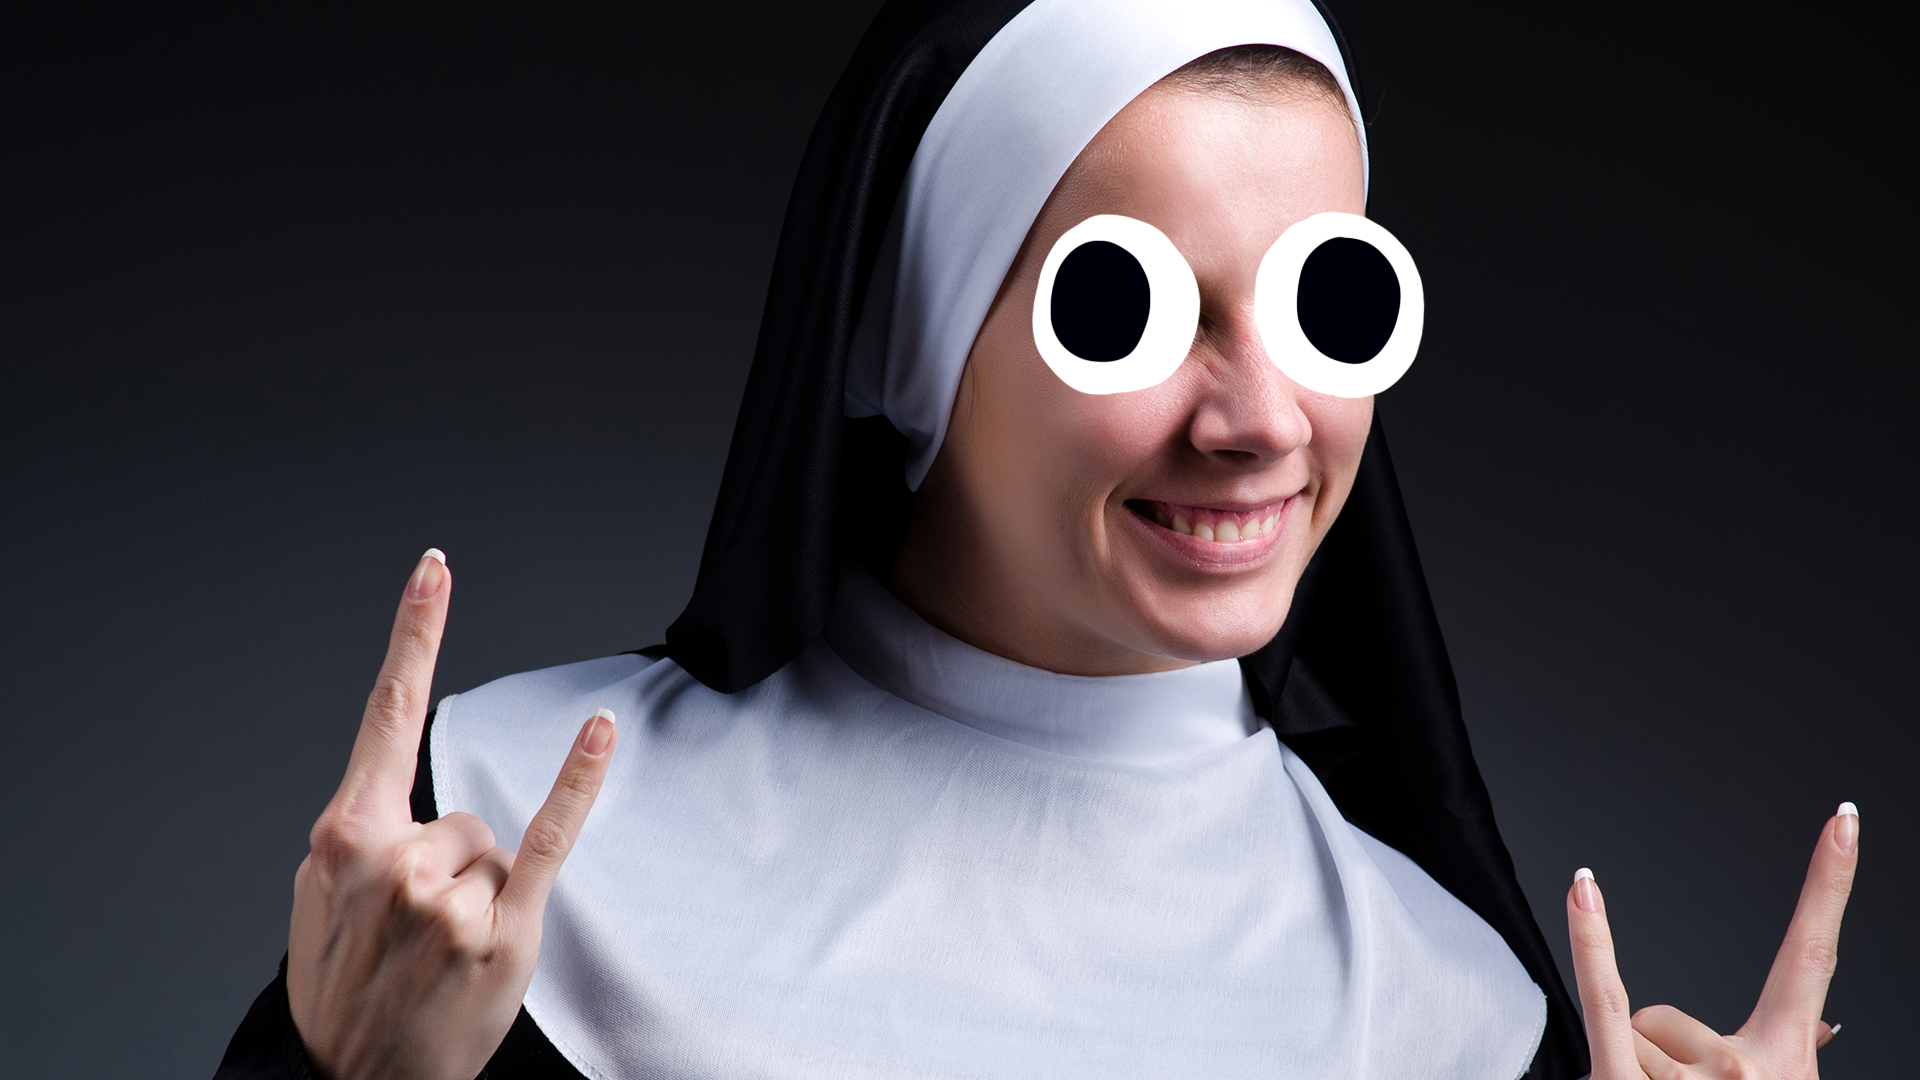 A cool nun